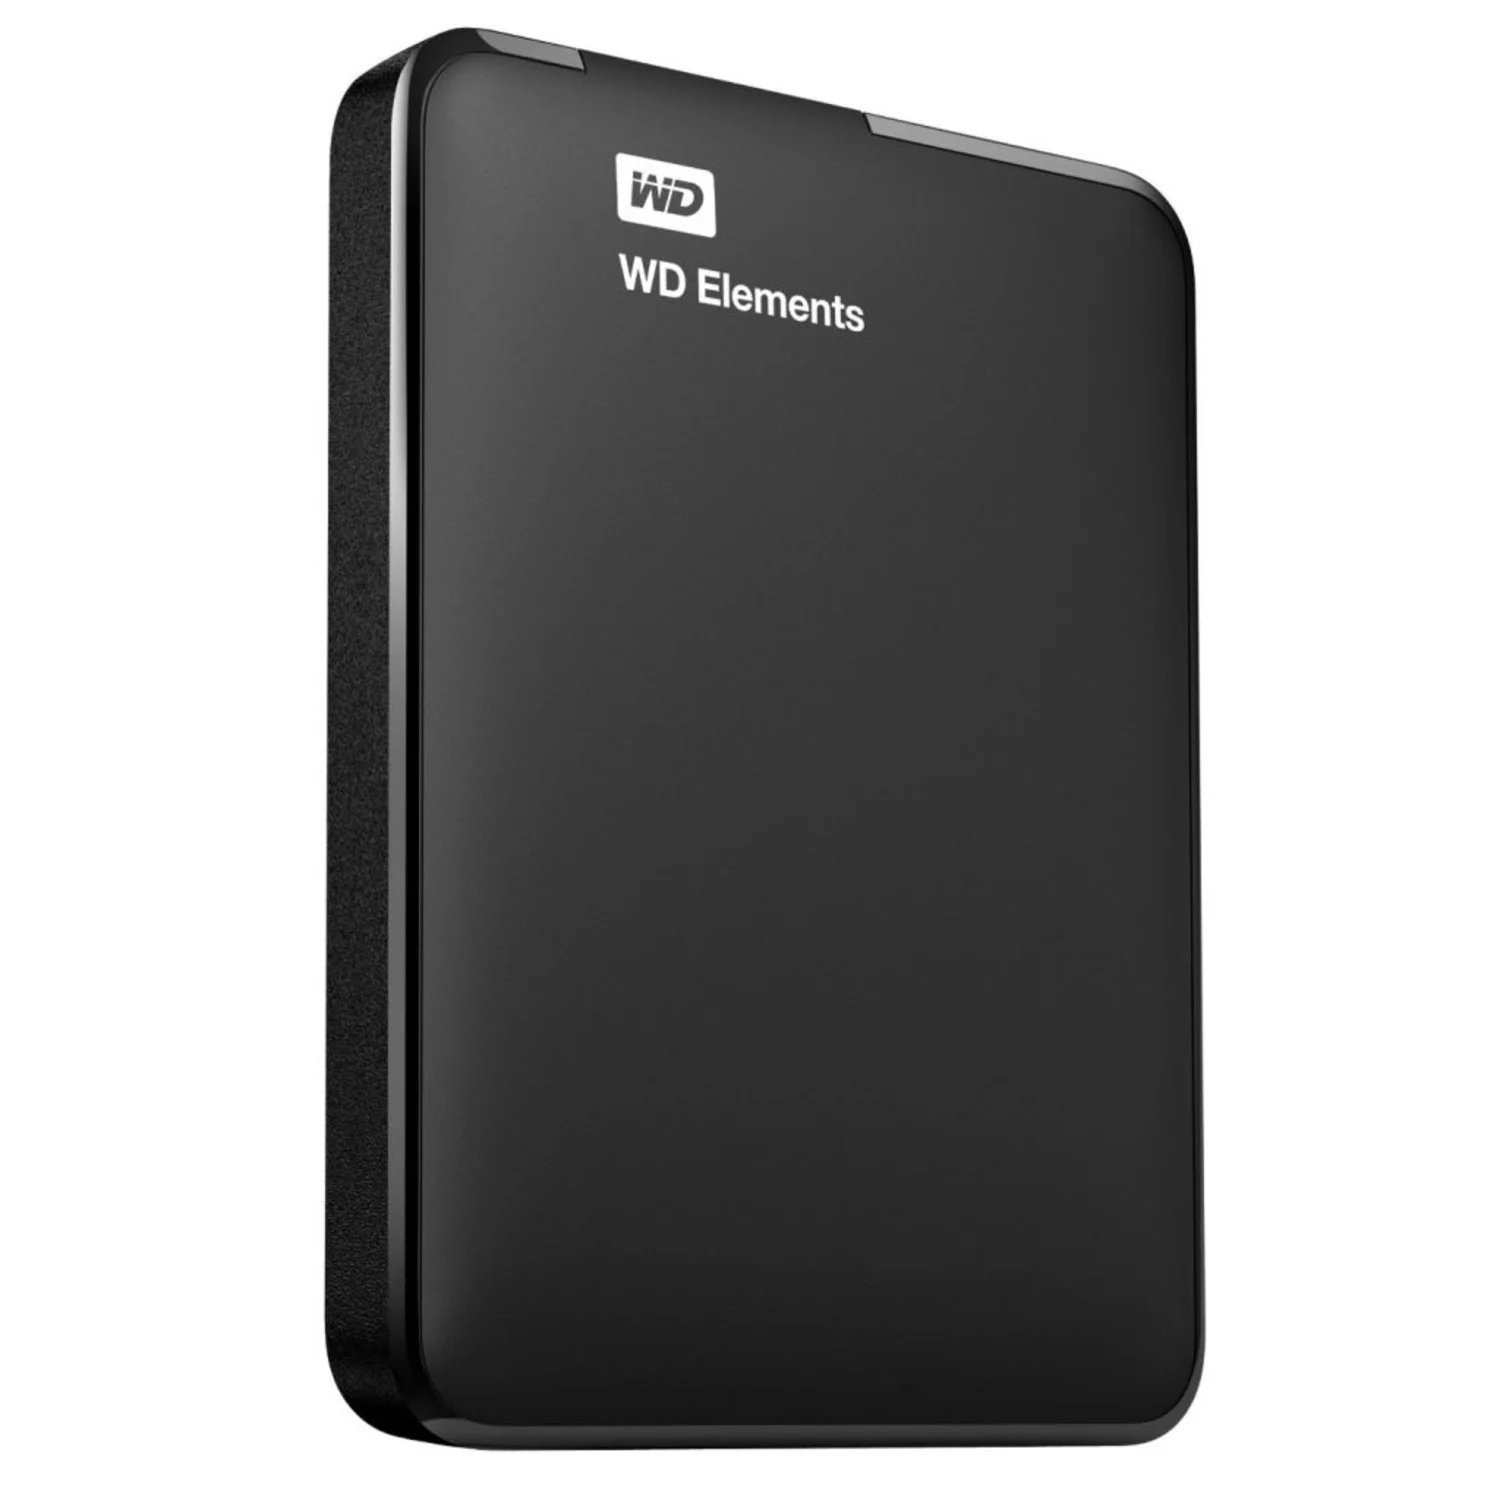 HD Externo Western Elements 2TB / 2.5" / USB 3.0 - Preto